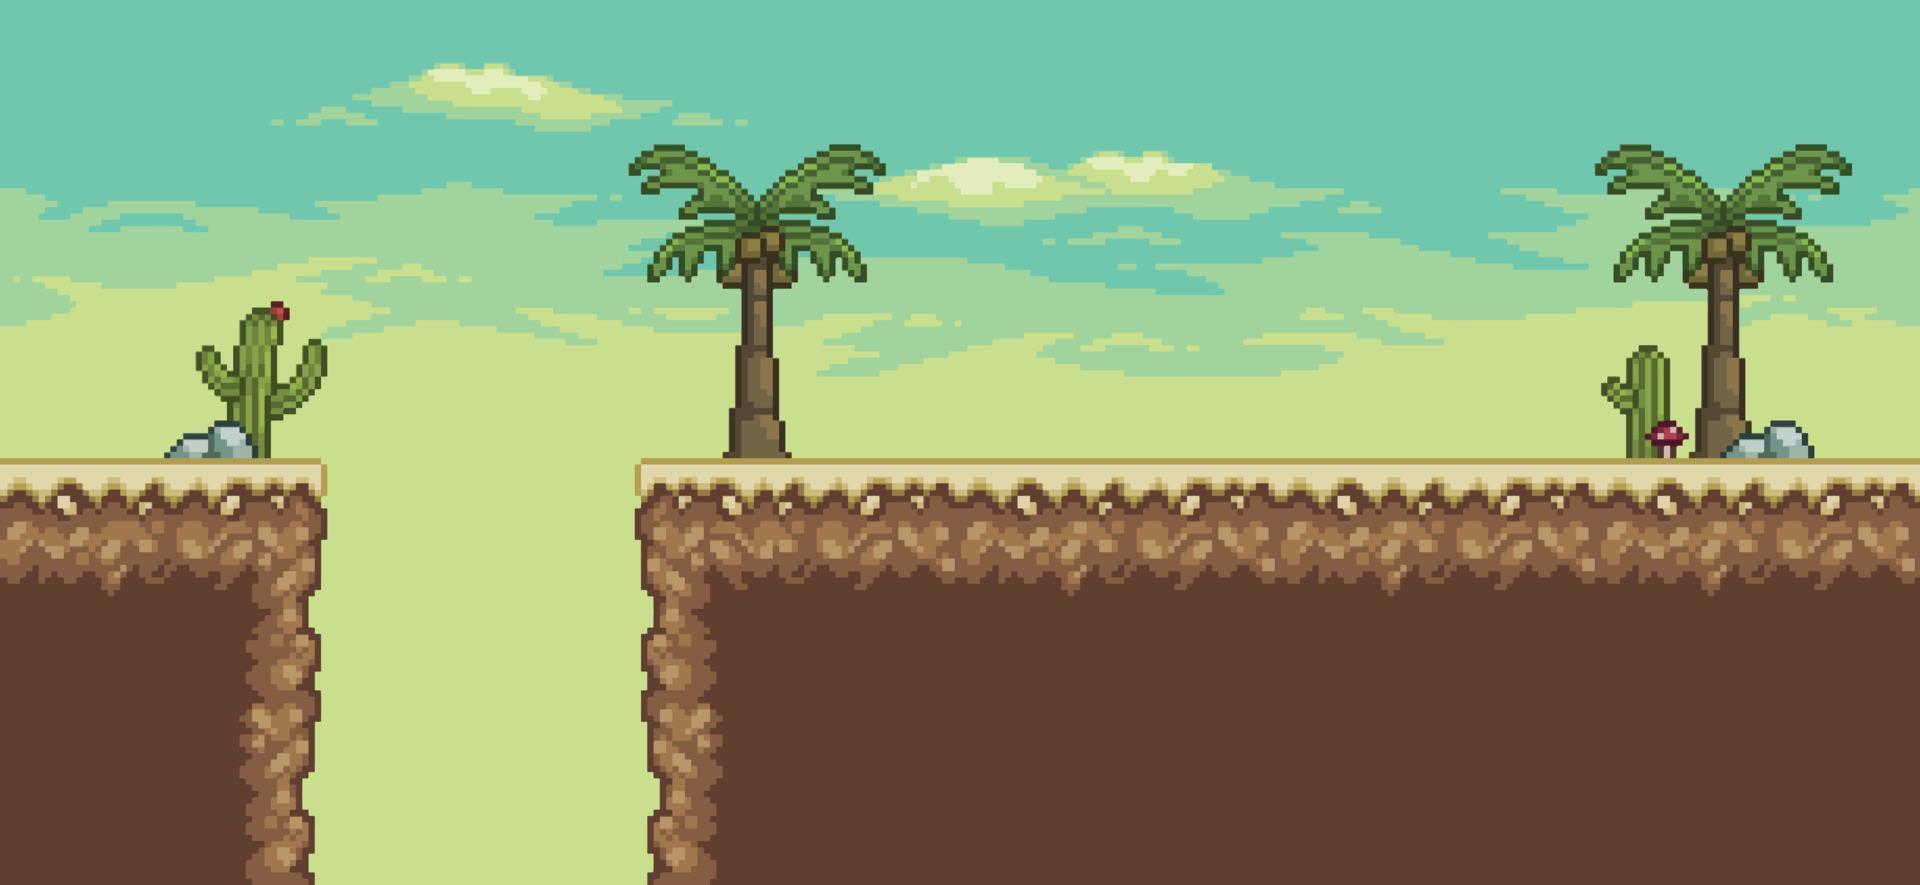 Pixelkunst-Wüstenspielszene mit Palme, Kakteen, 8-Bit-Hintergrundvektor vektor